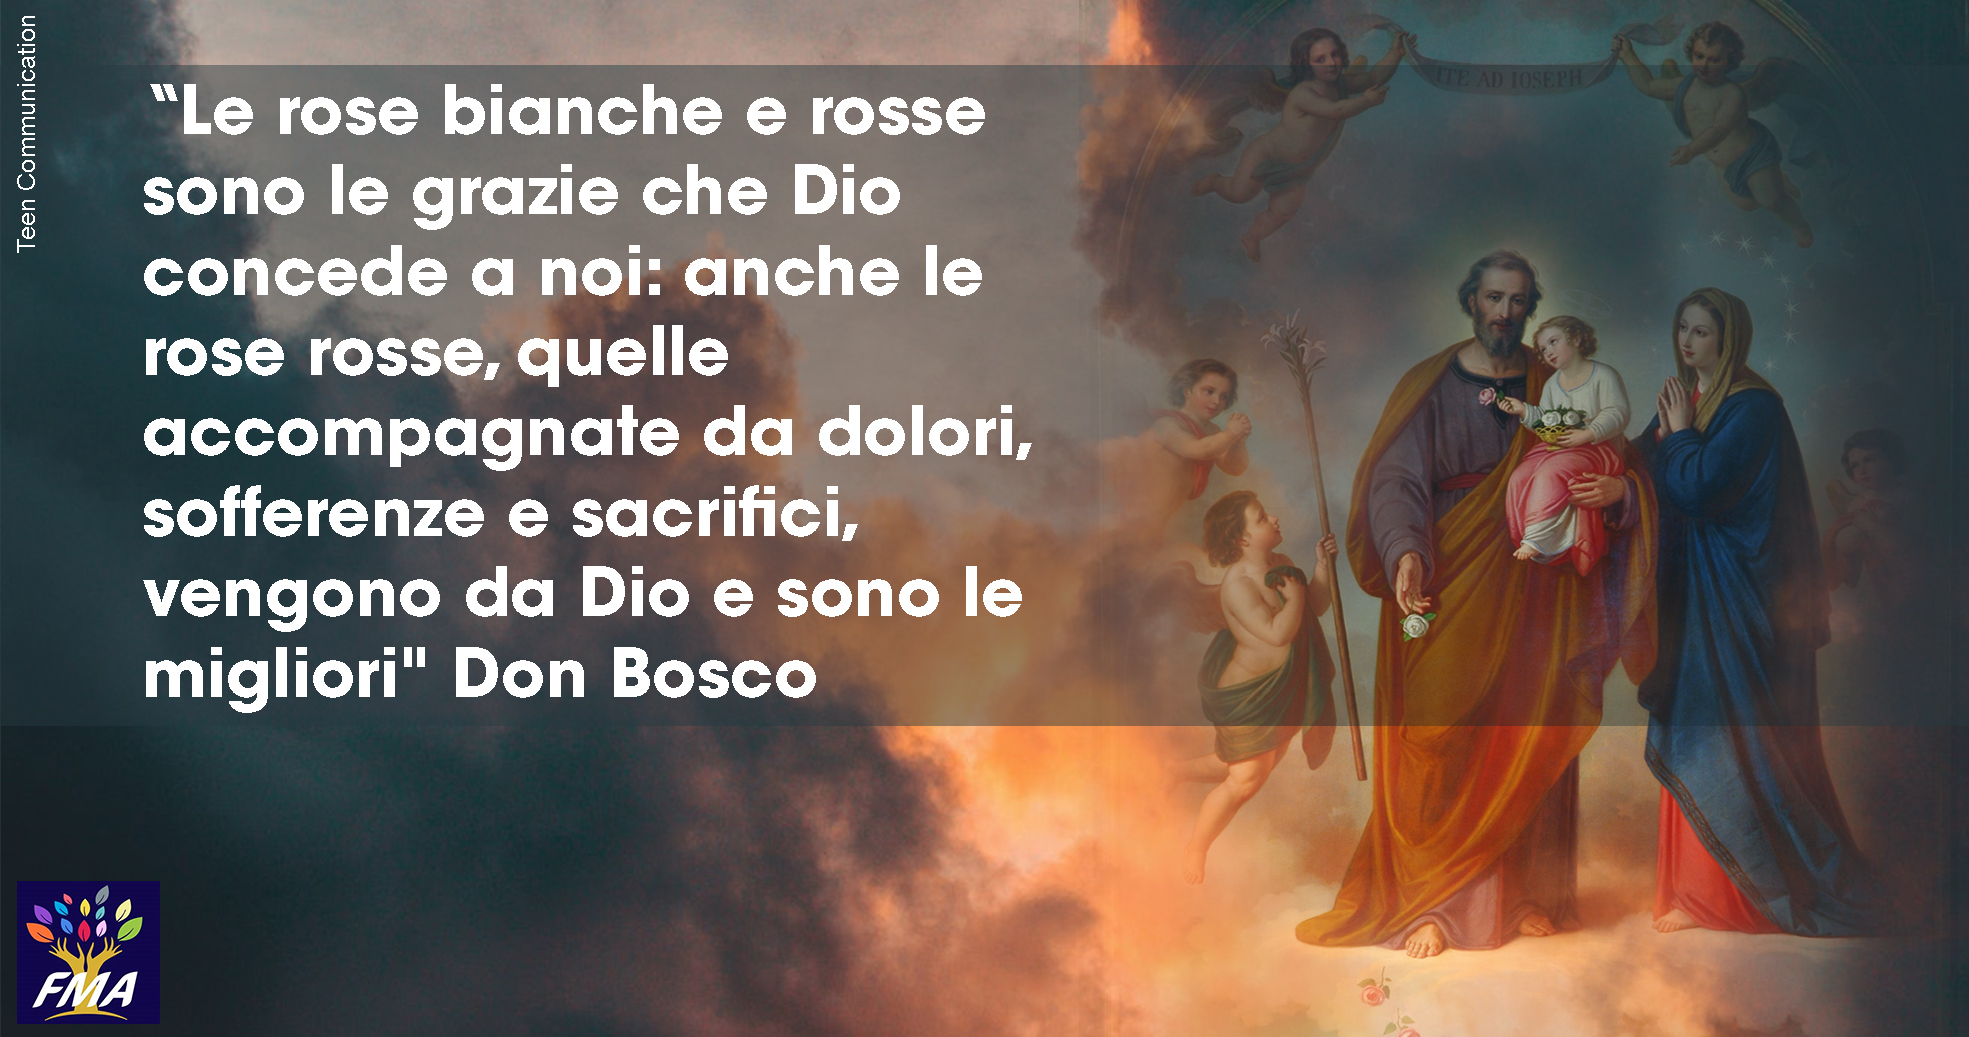 Don Bosco e e la devozione a San Giuseppe